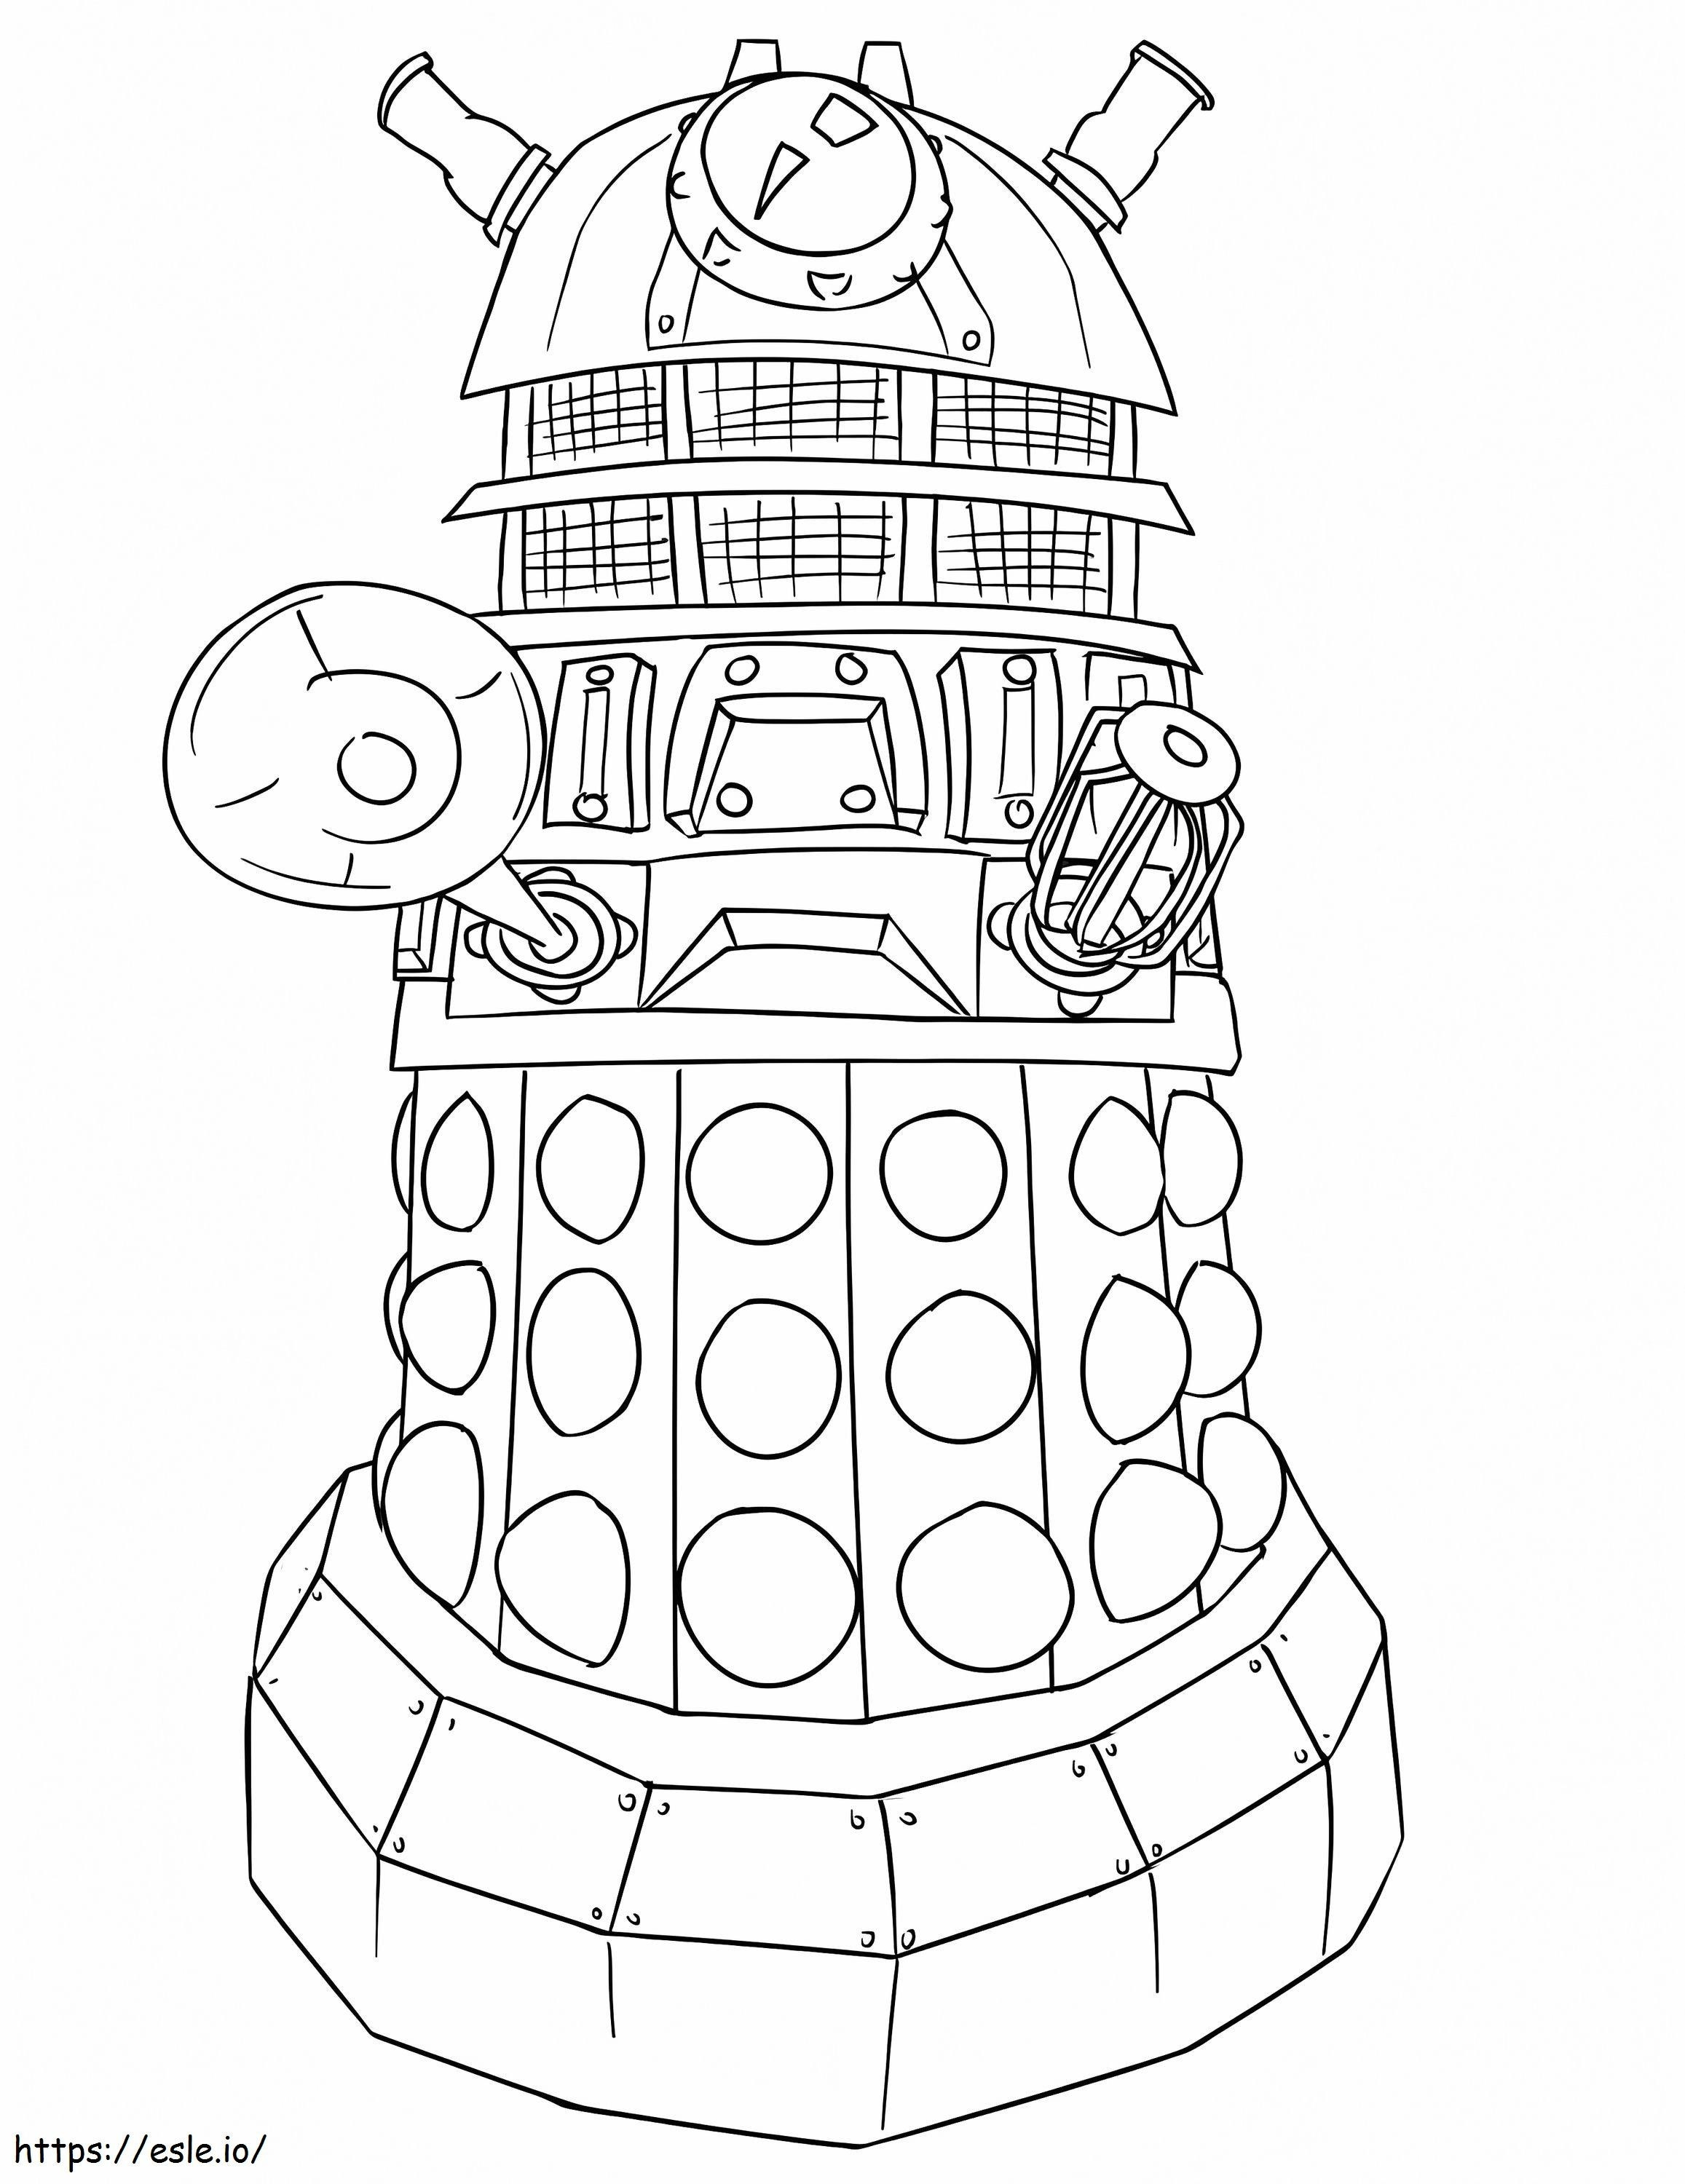 Coloriage Docteur Who Dalek à imprimer dessin